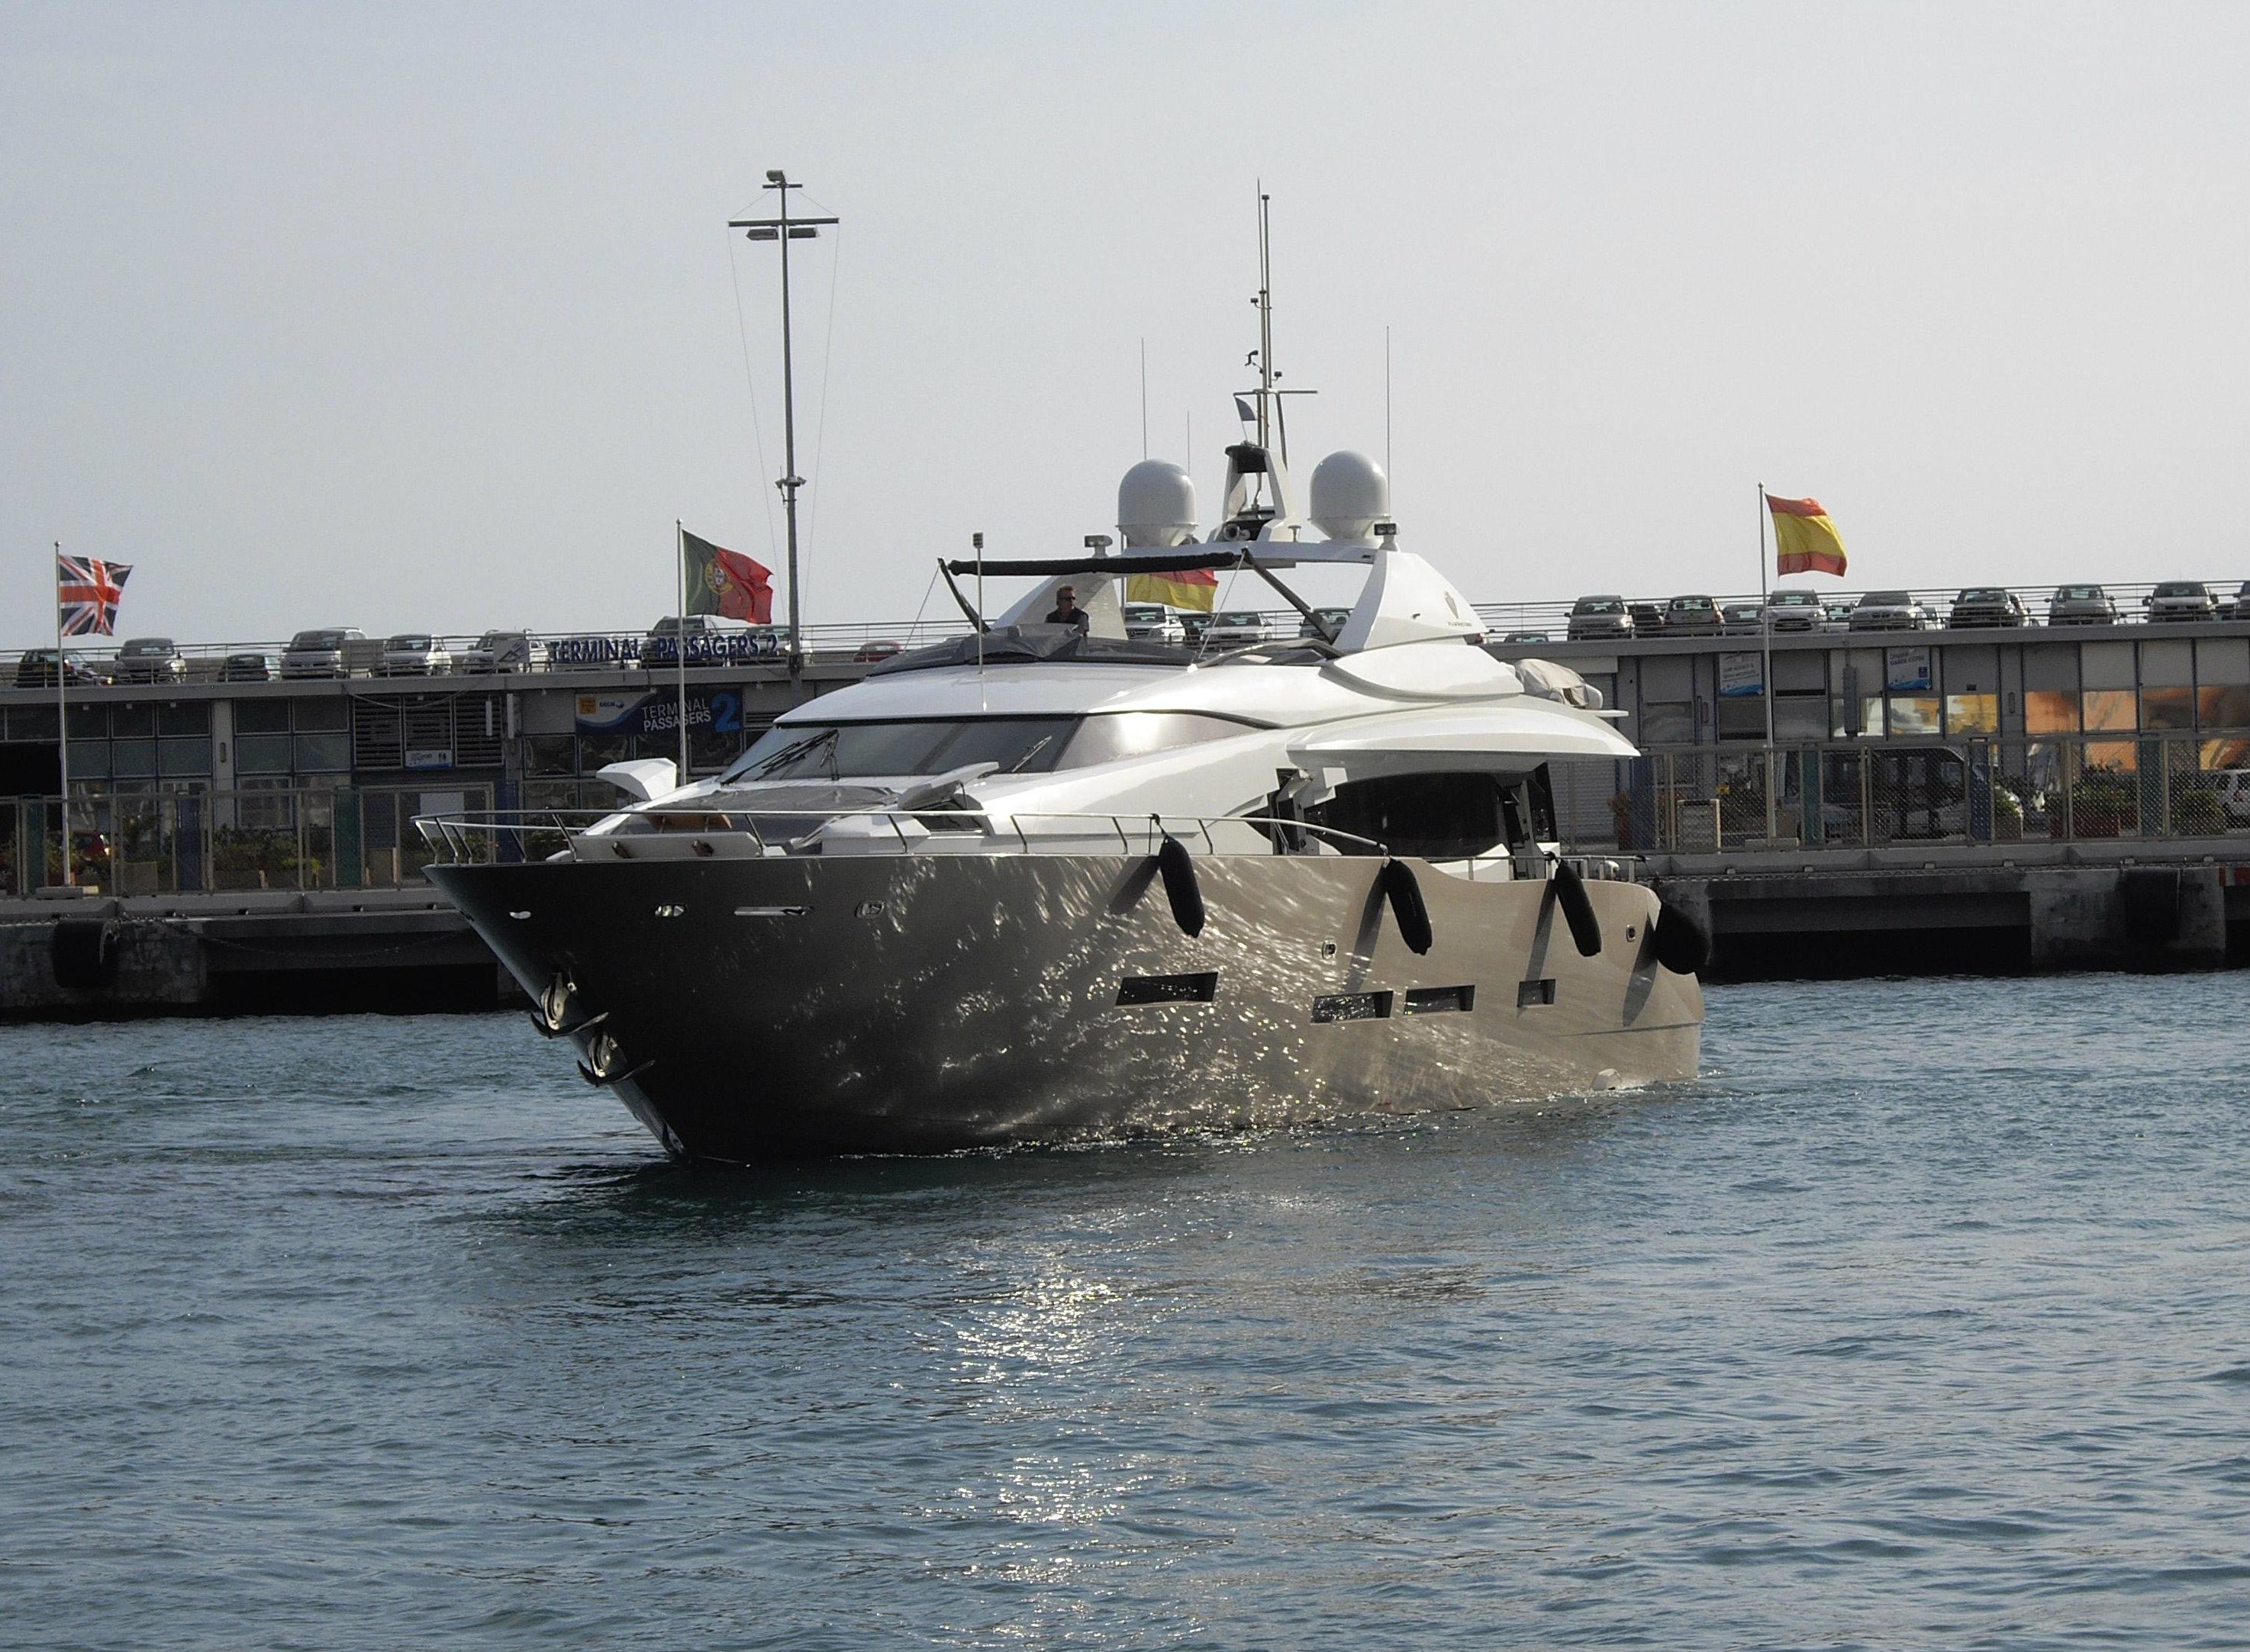 The 29m Yacht QUASAR